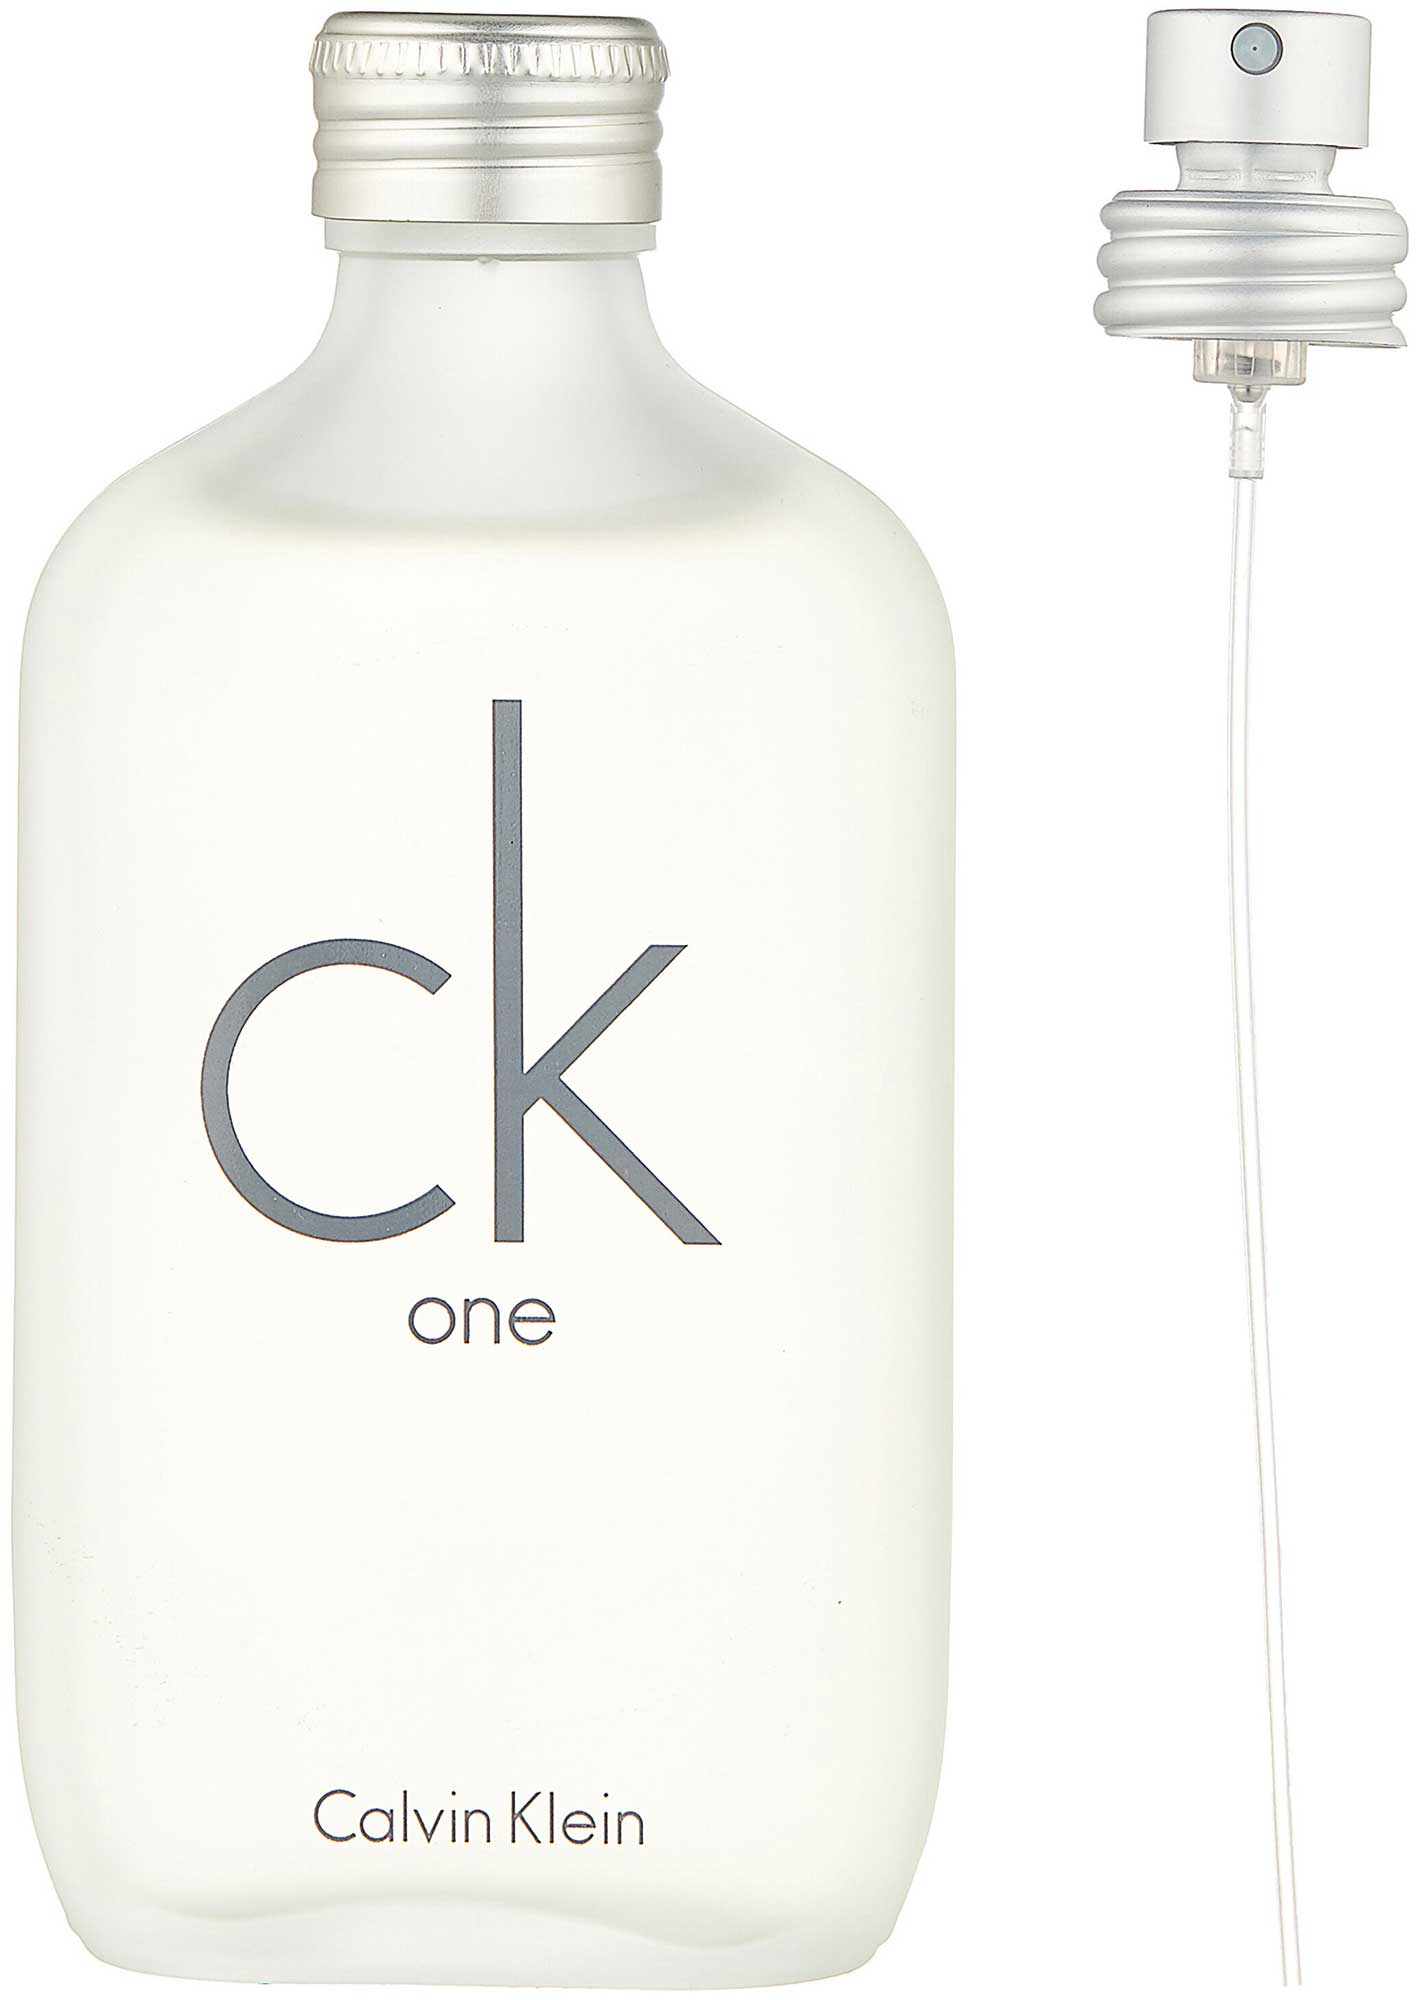 Calvin Klein Ck One Ж Товар Туалетная вода унисекс 100 мл спрей 65607400000 - фото 1